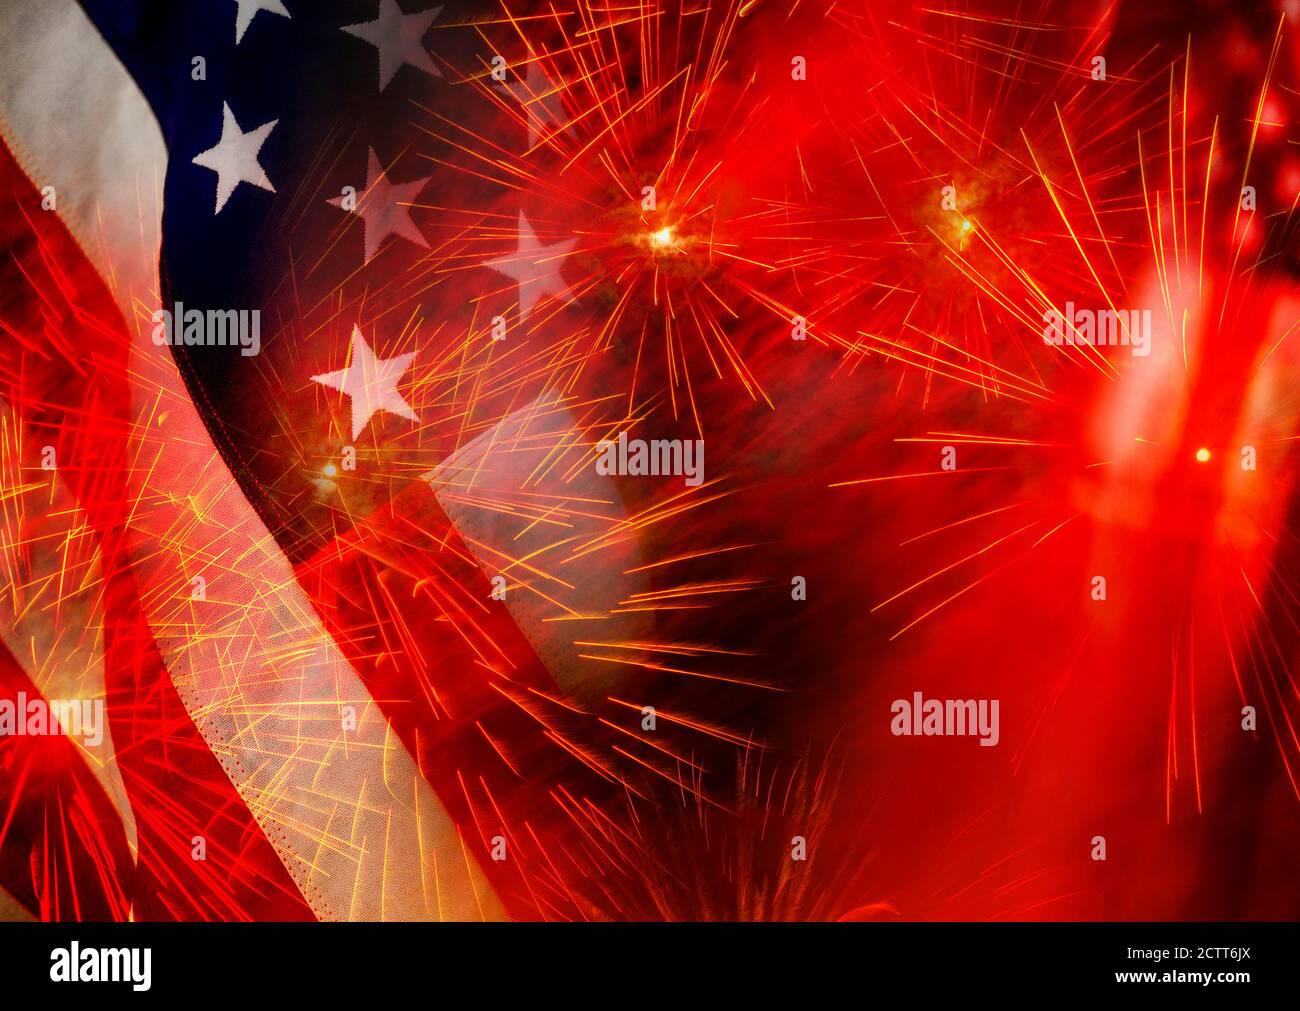 Composito digitale di fuochi d'artificio e bandiera americana Foto Stock